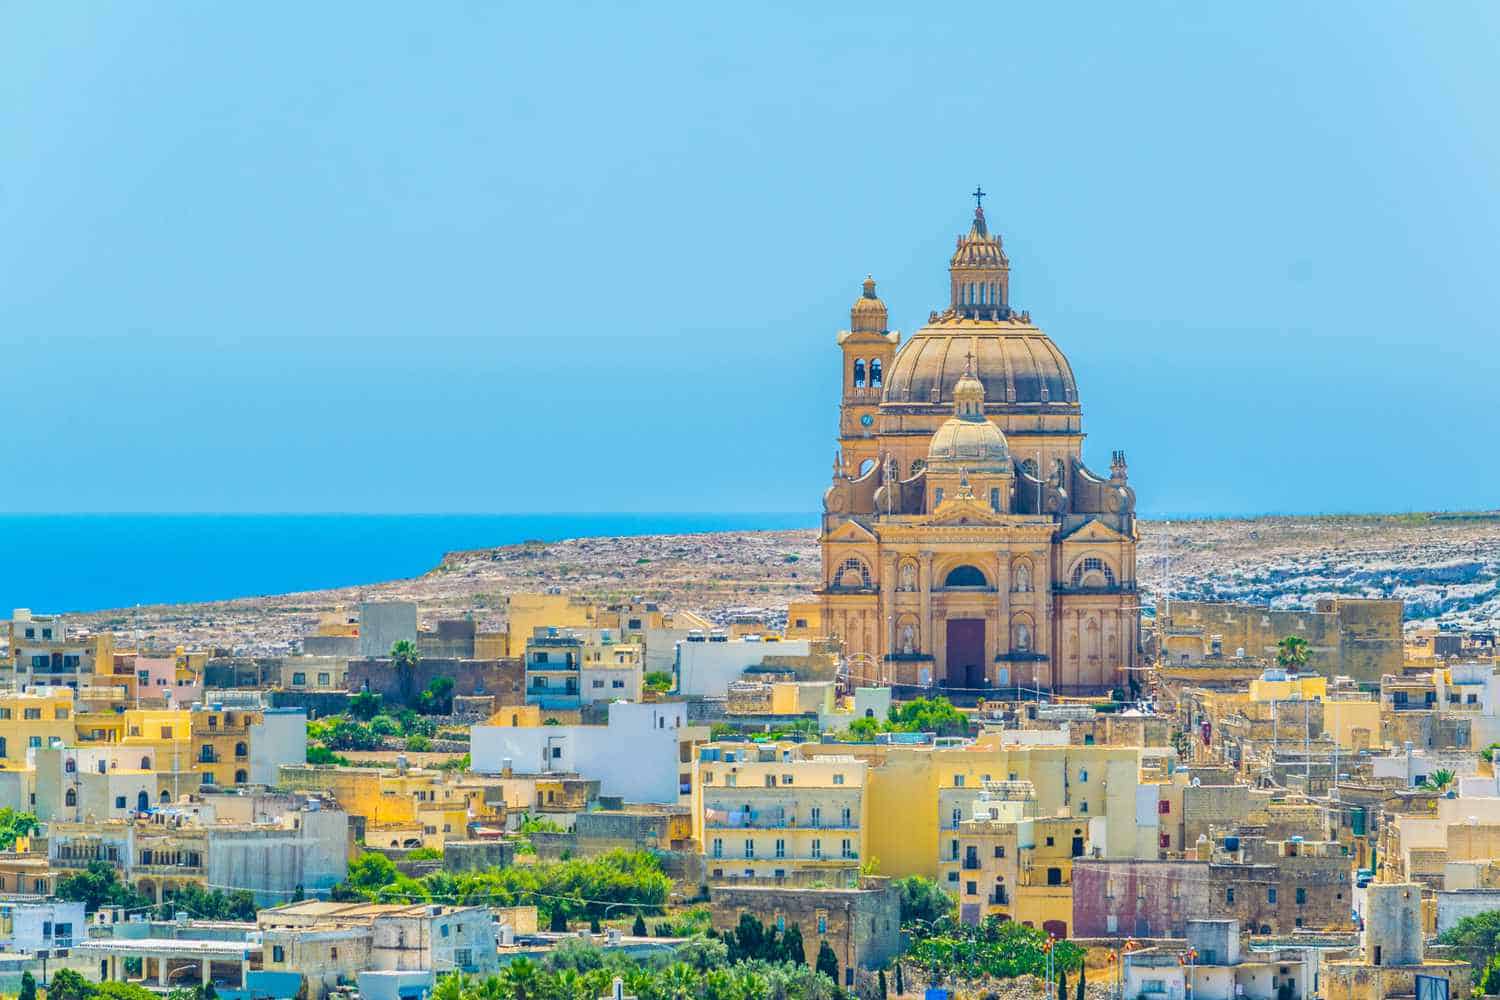 Đảo Gozo được biết đến như một thiên đường yên tĩnh